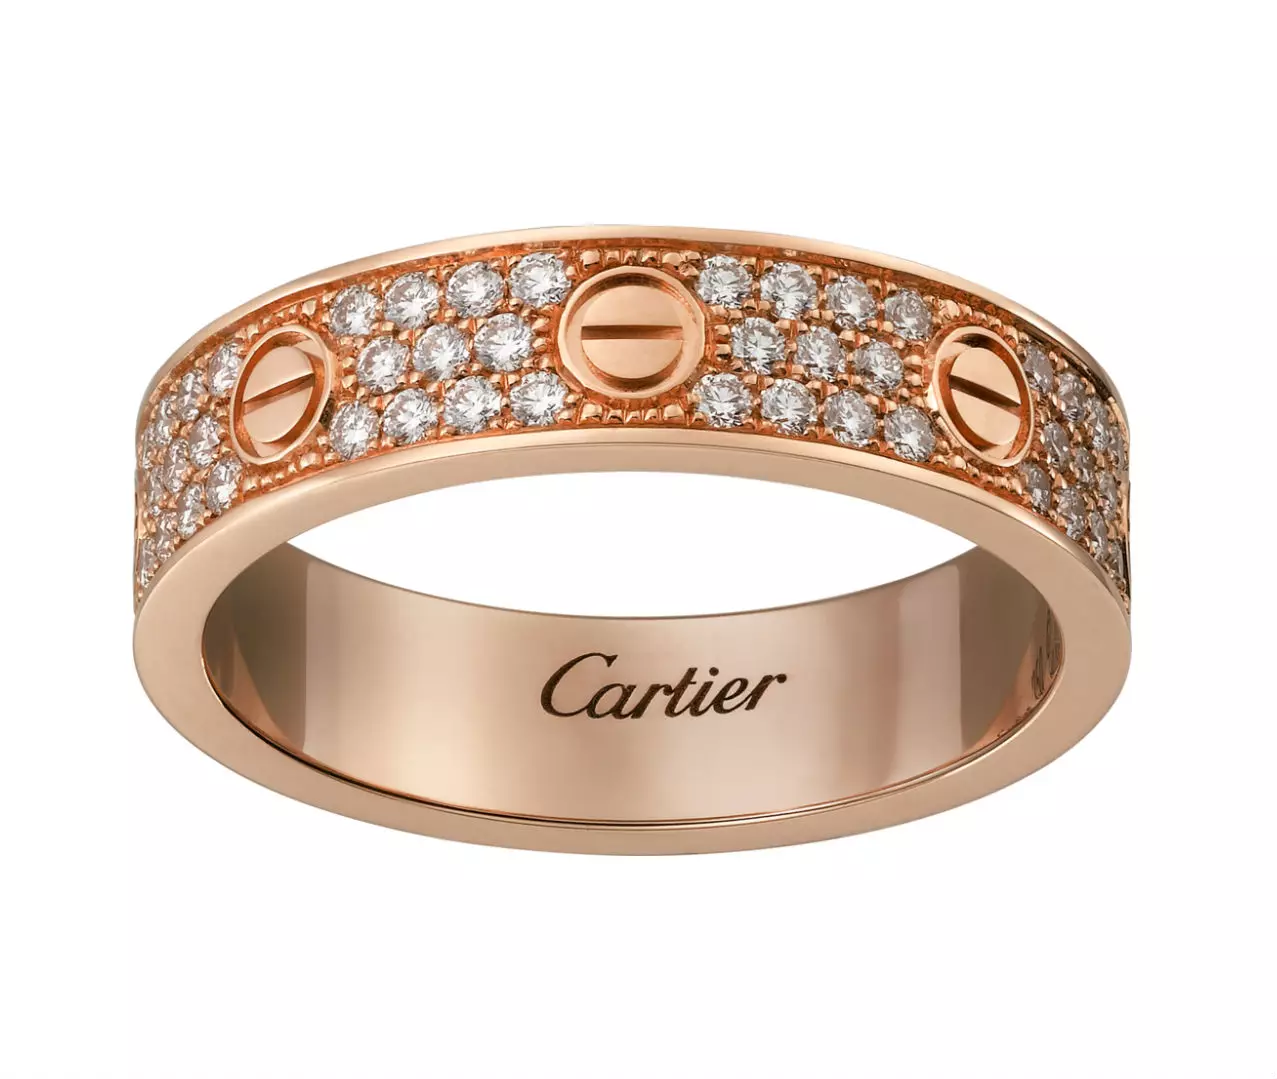 Pierścień Cartier (115 zdjęć): Historia biżuterii i przegląd popularnej trójcy modeli, paznokci, miłość, koszt 3102_67